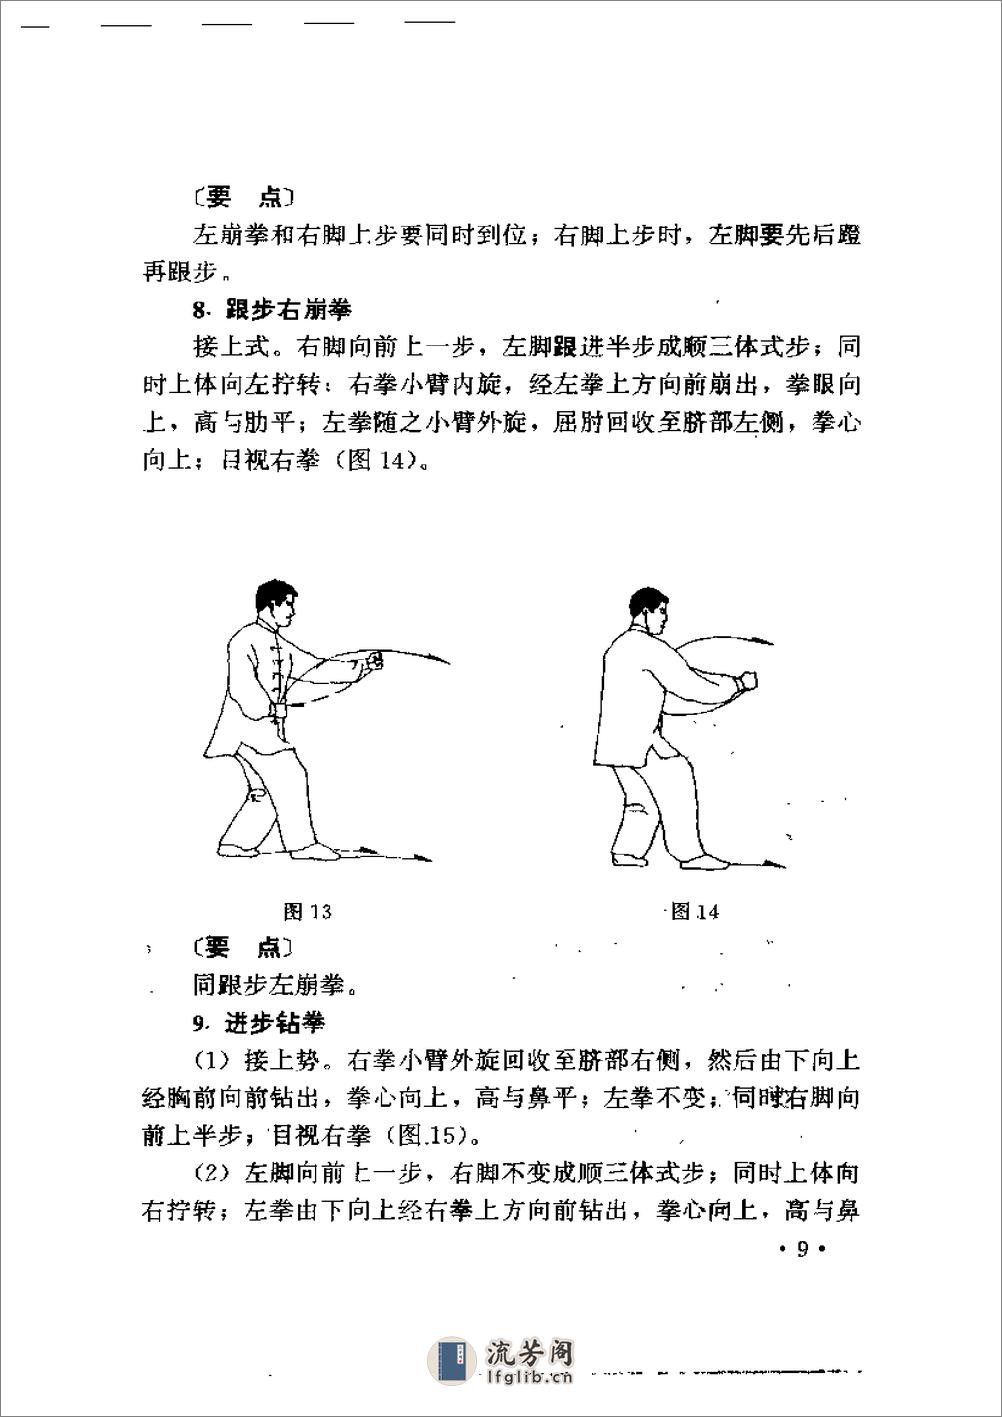 《形意拳》中国武术系列规定套路编写组 - 第15页预览图